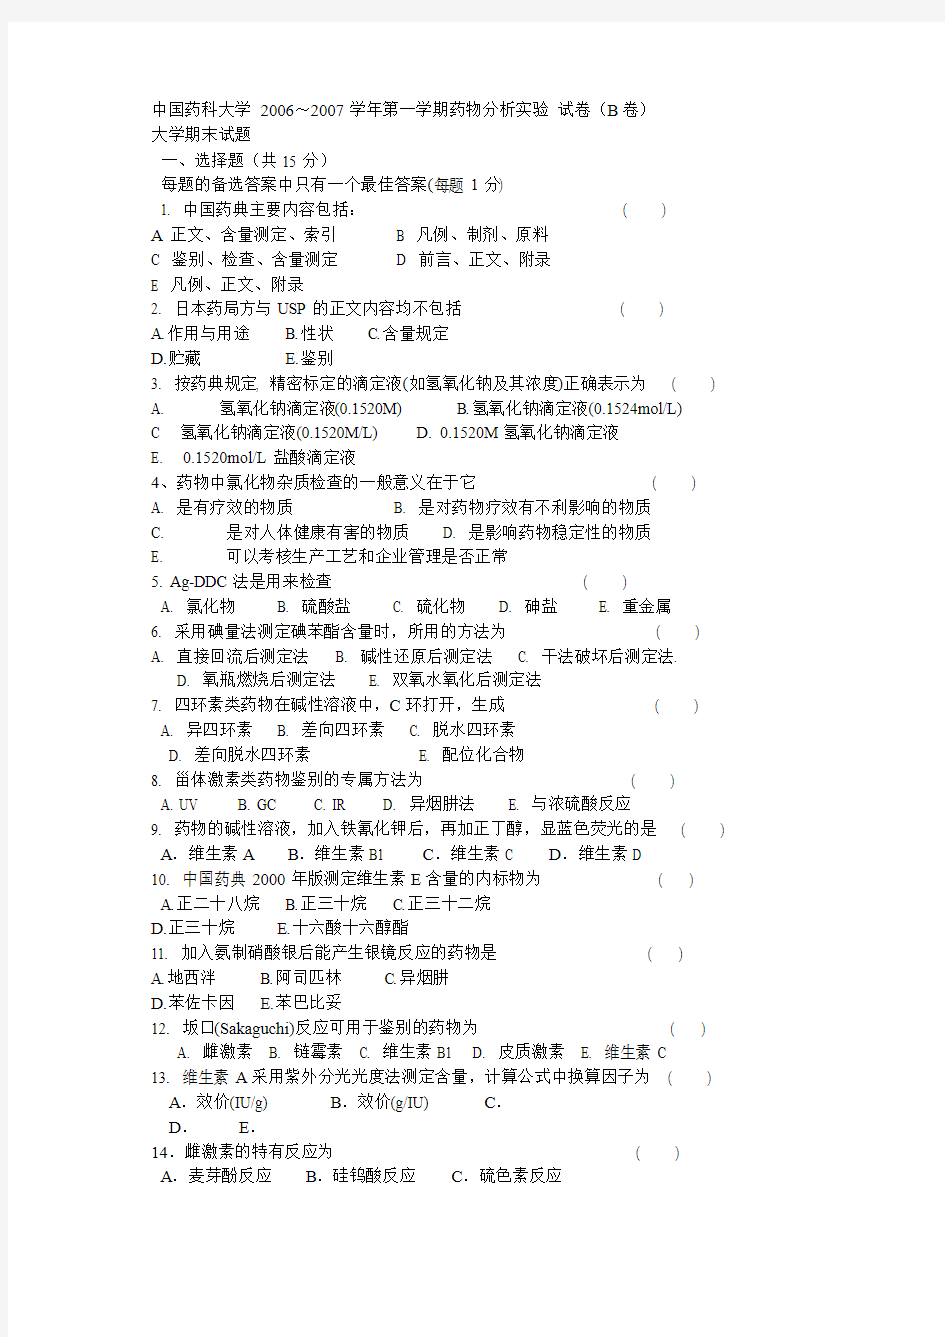 中国药科大学 2006-2007药分期末试卷